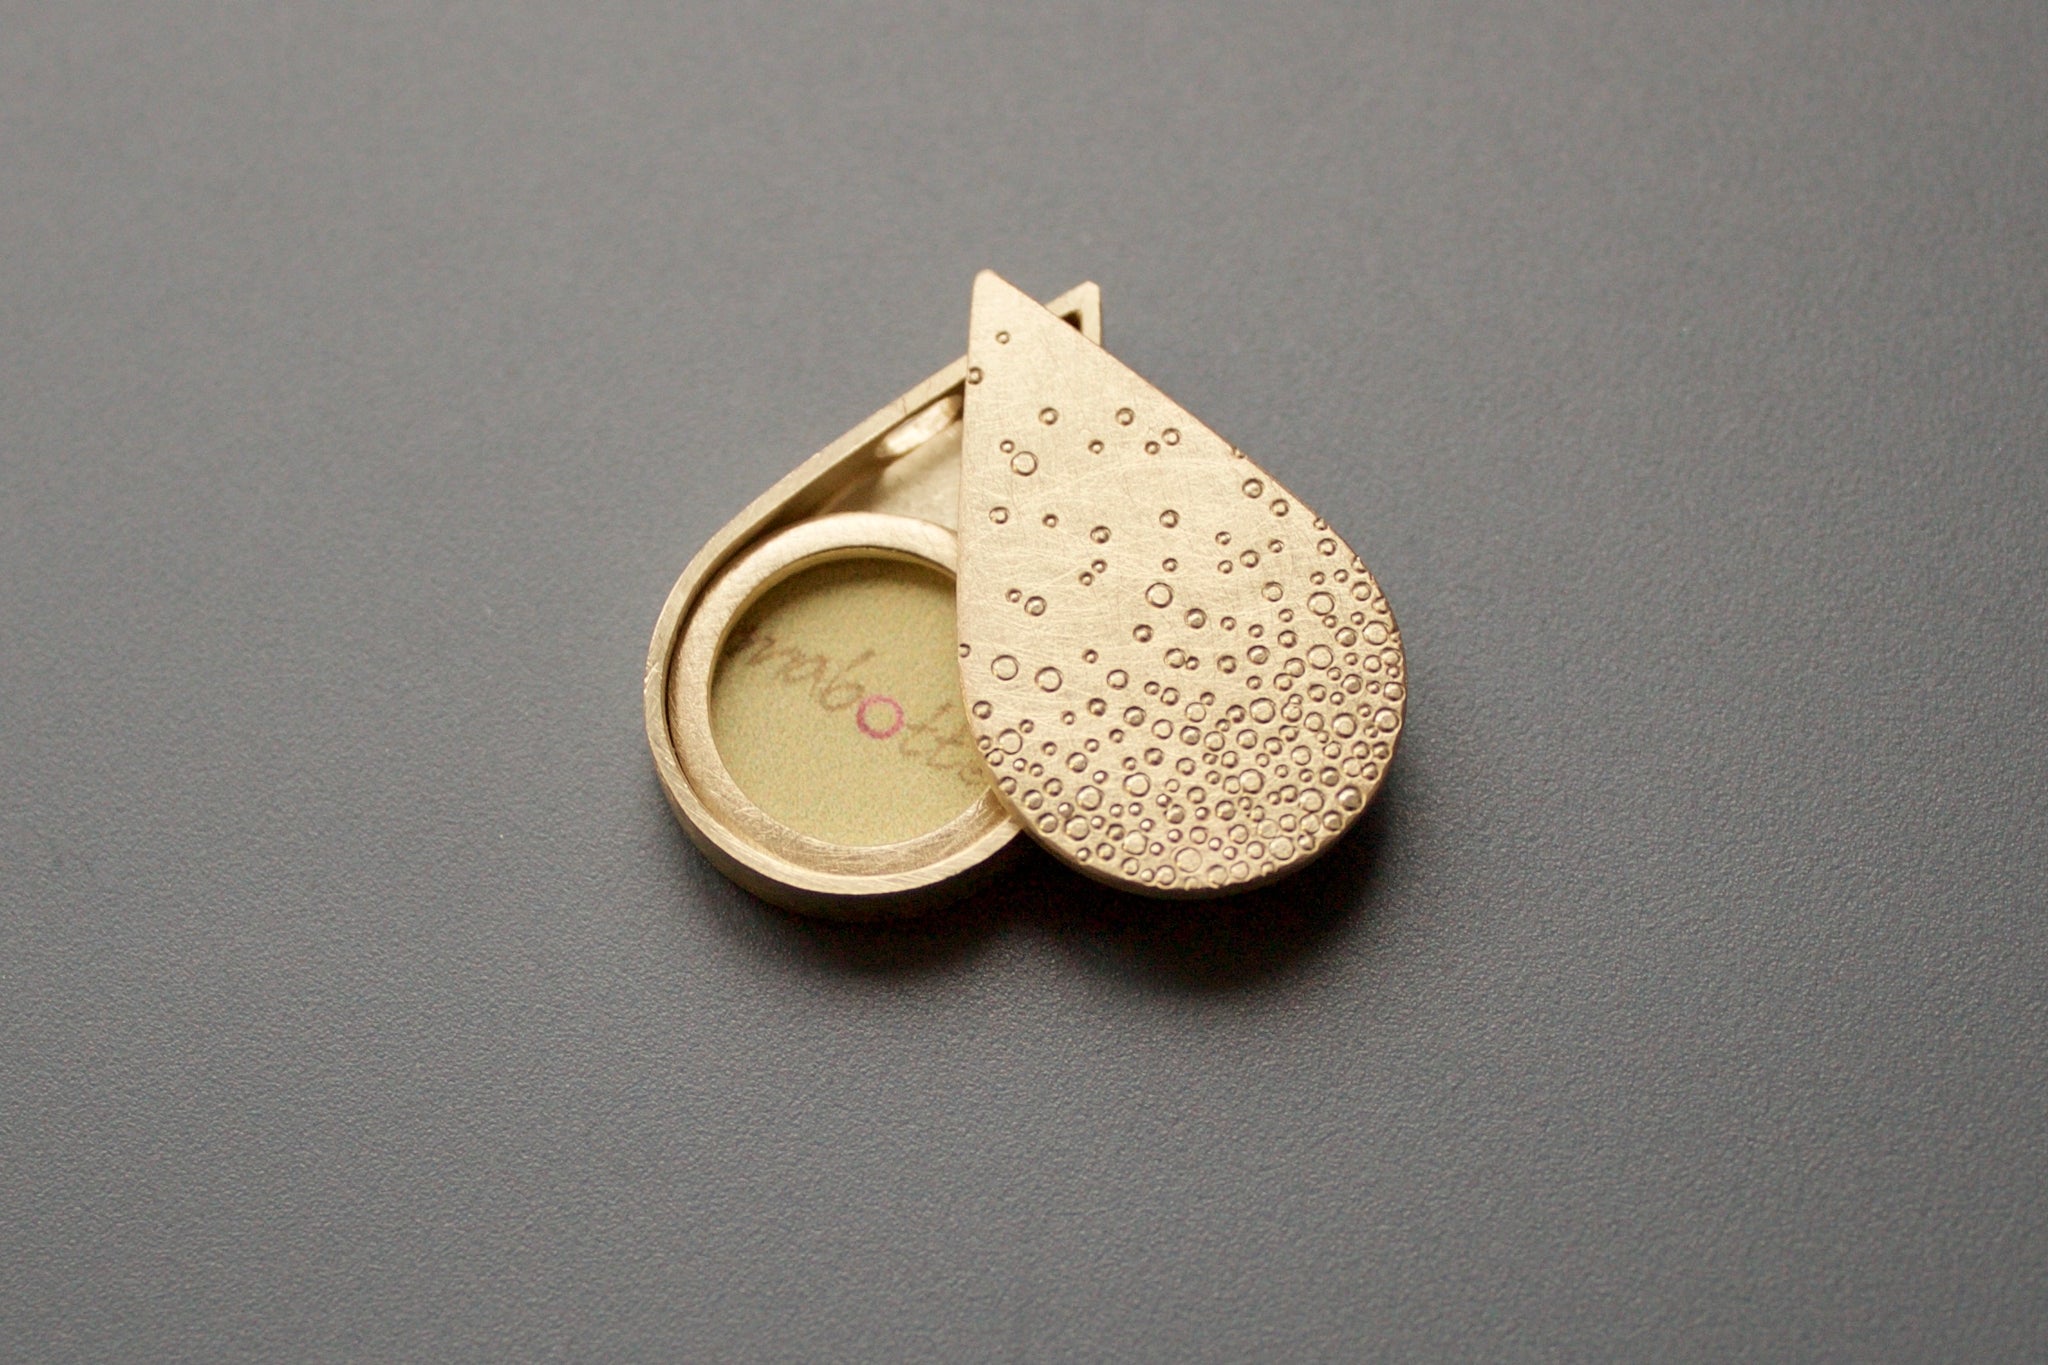 unique golden drop shaped photo pendant with bubbles design